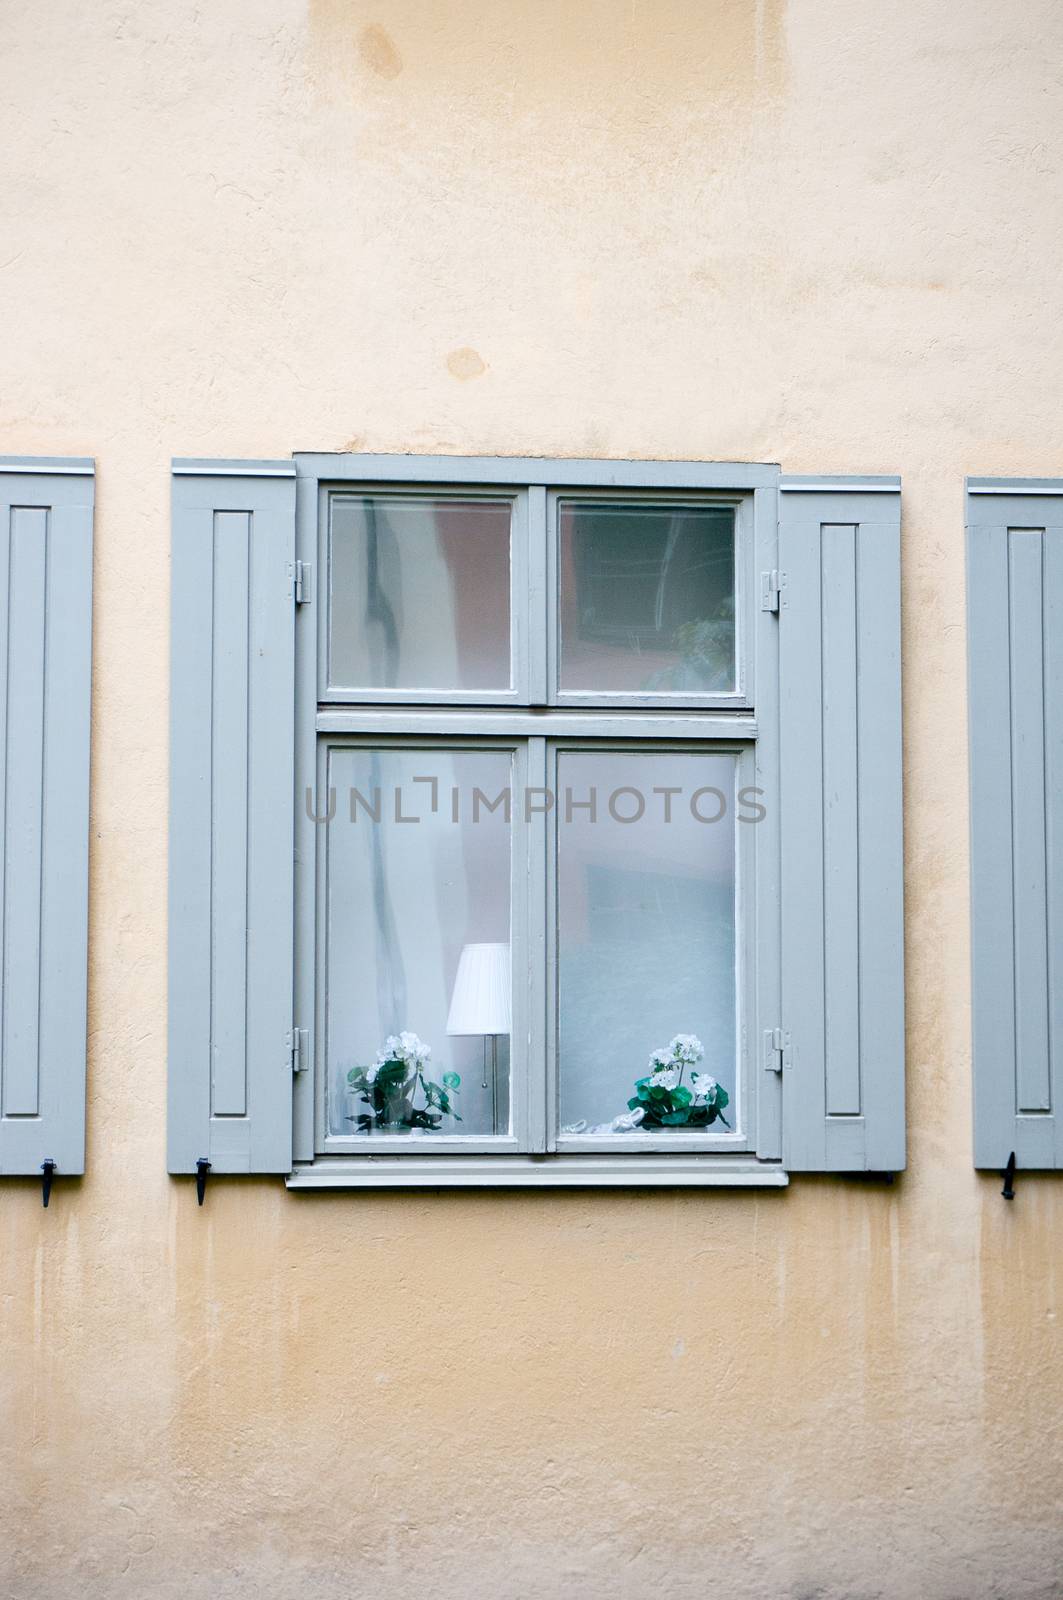 Stockholm windows by javax